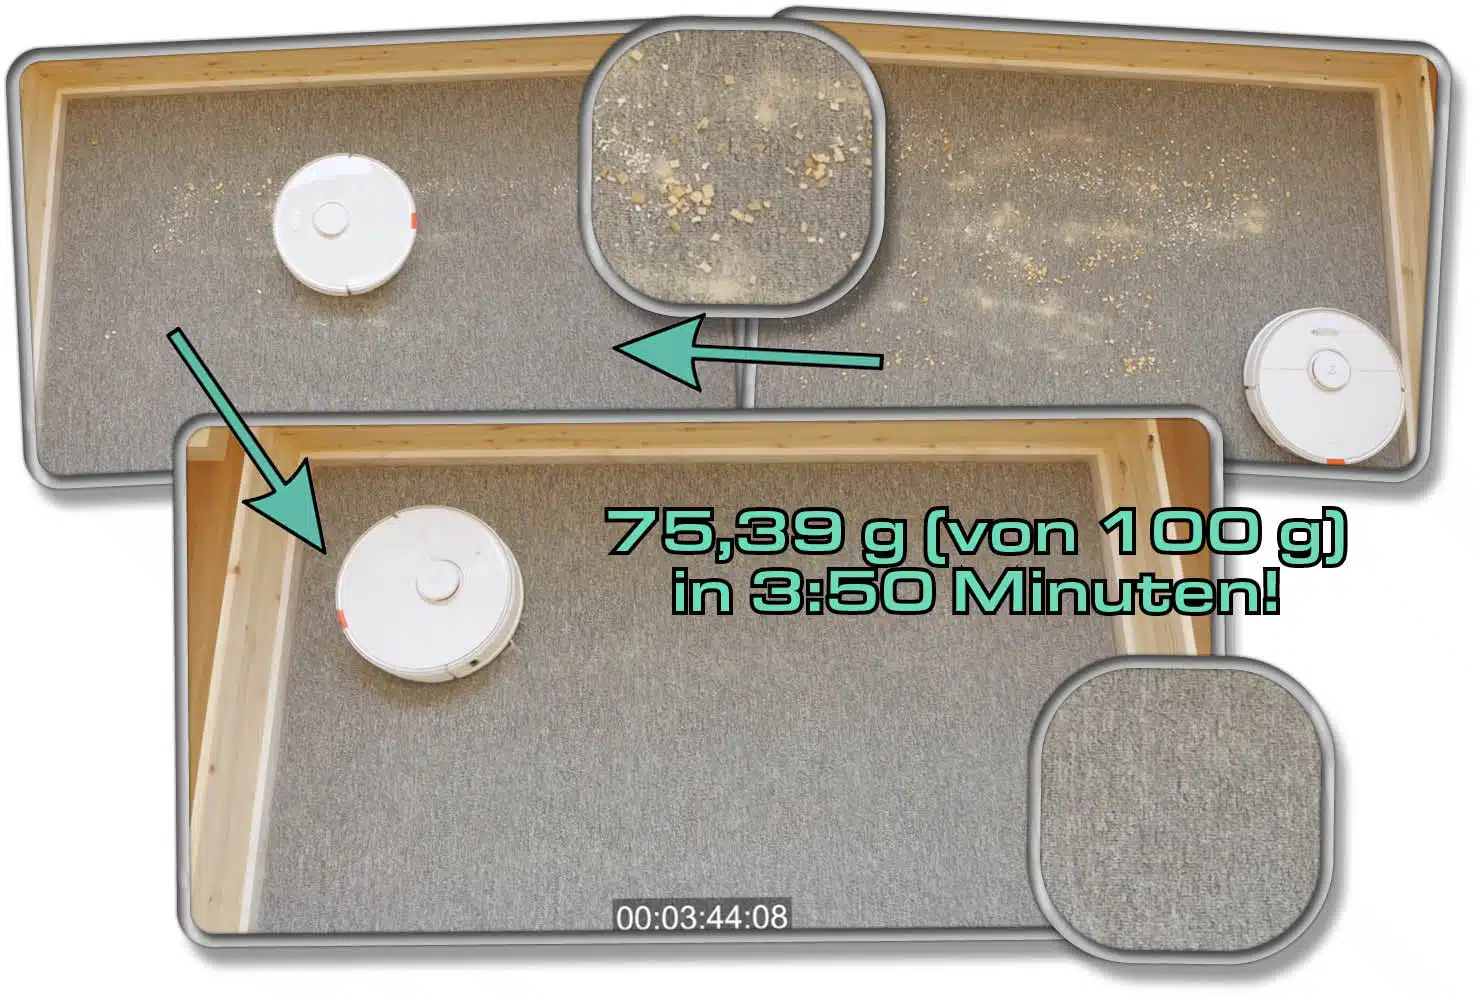 Roborock S7 - Die gemessene Saugleistung auf Teppichboden